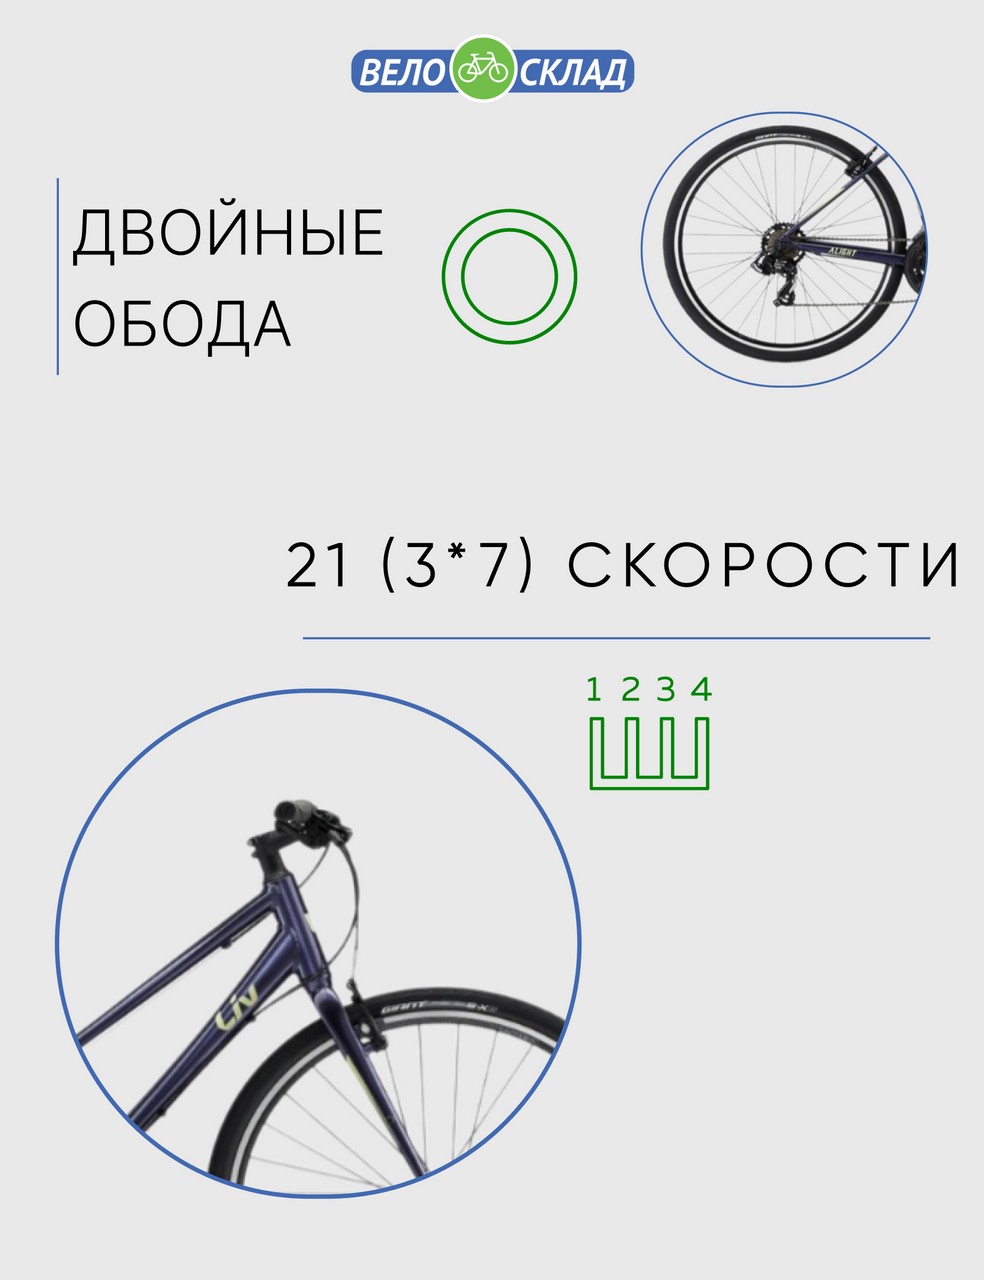 Женский велосипед Giant Alight 3, год 2022, цвет Синий, ростовка 19.5